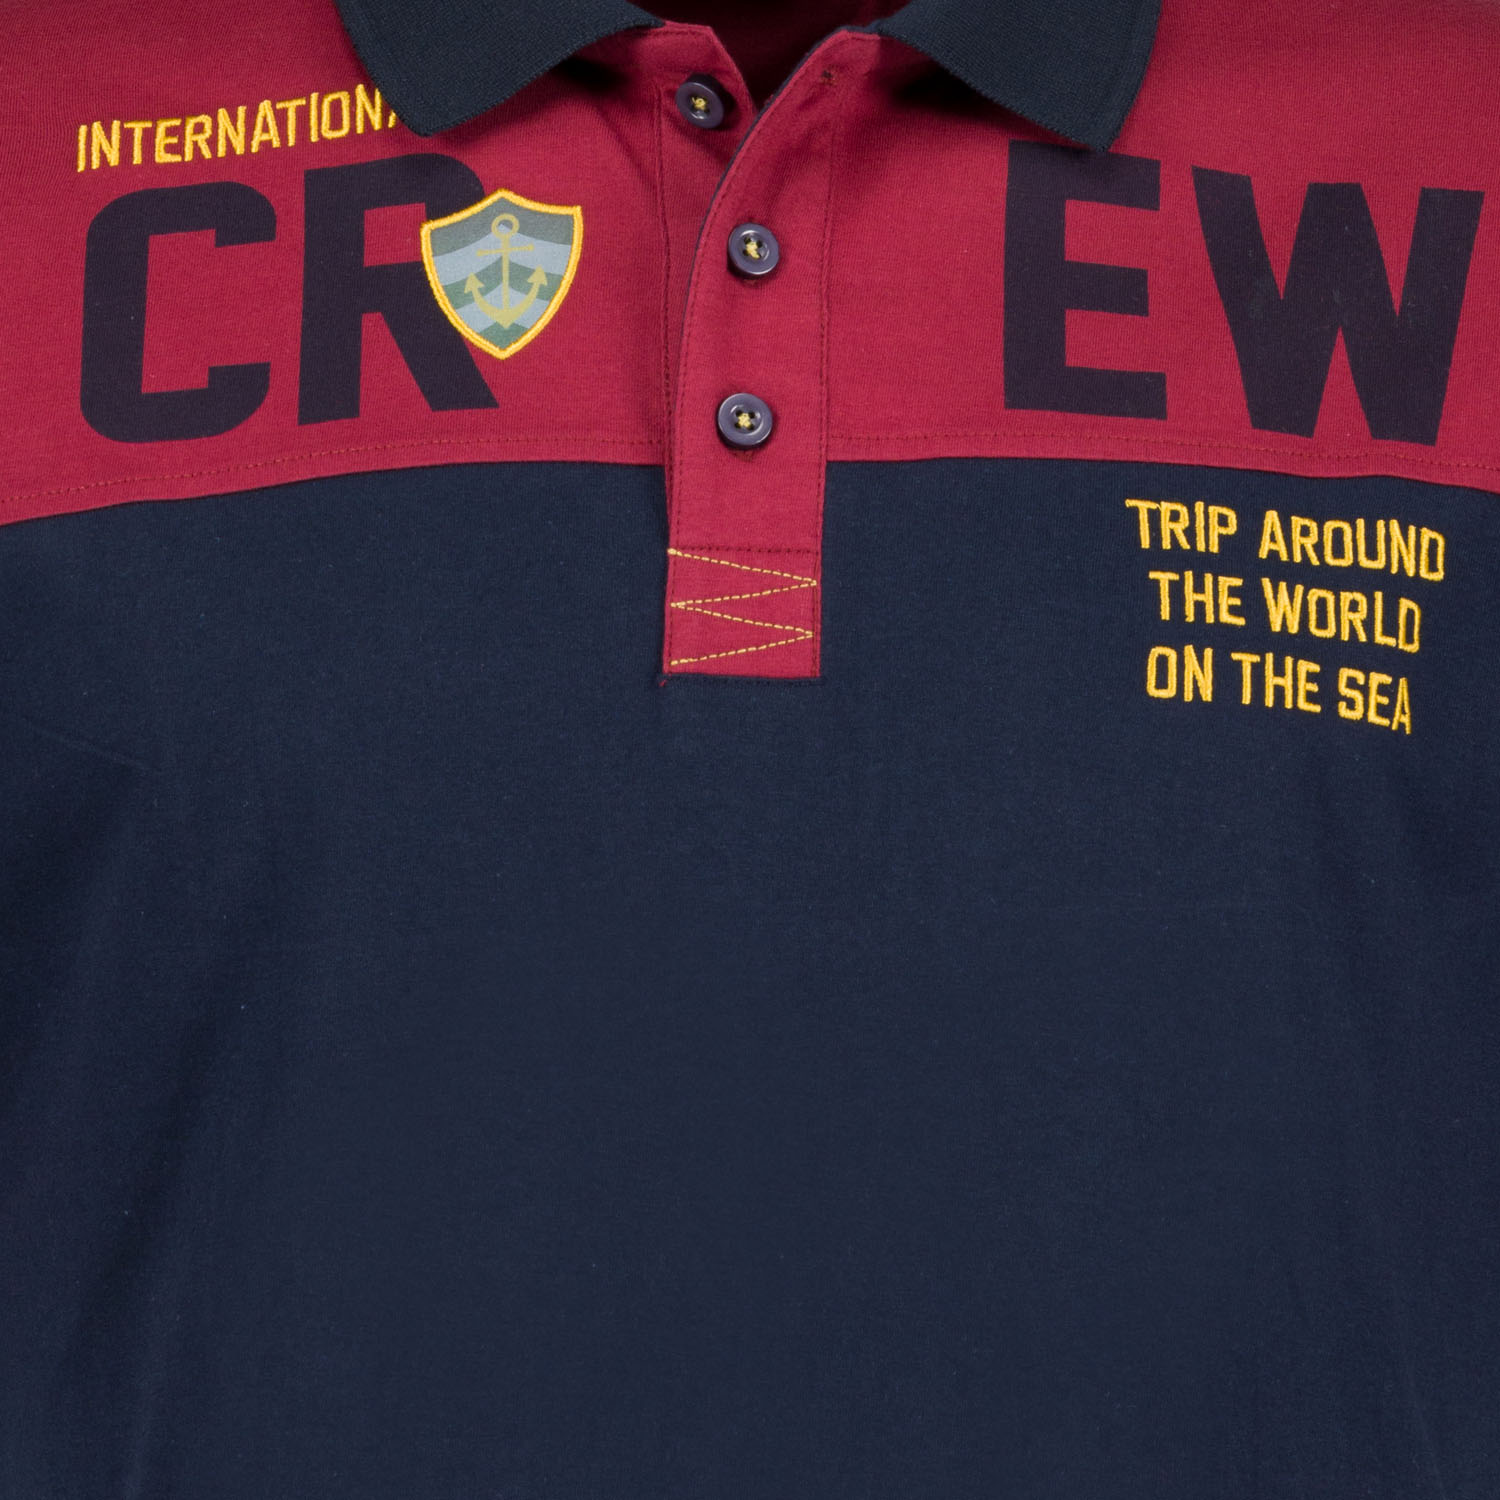 Herren Motiv Poloshirt kurzarm von ADAMO Serie "CREW" in weinrot bis Übergröße 10XL Regular Fit